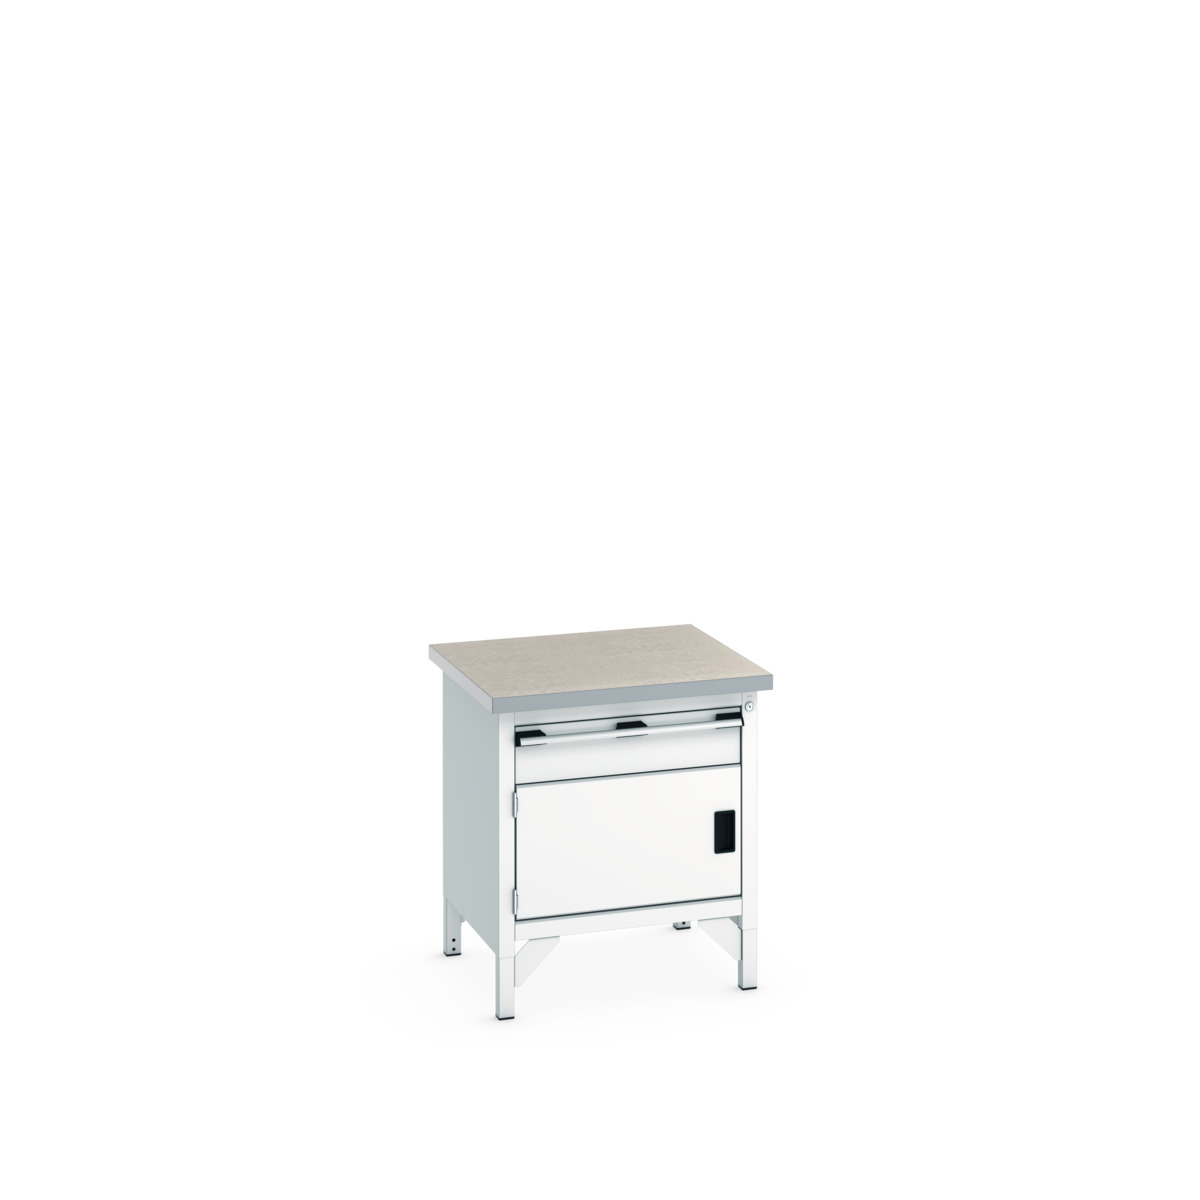 41002009.16V - cubio storage bench (lino)